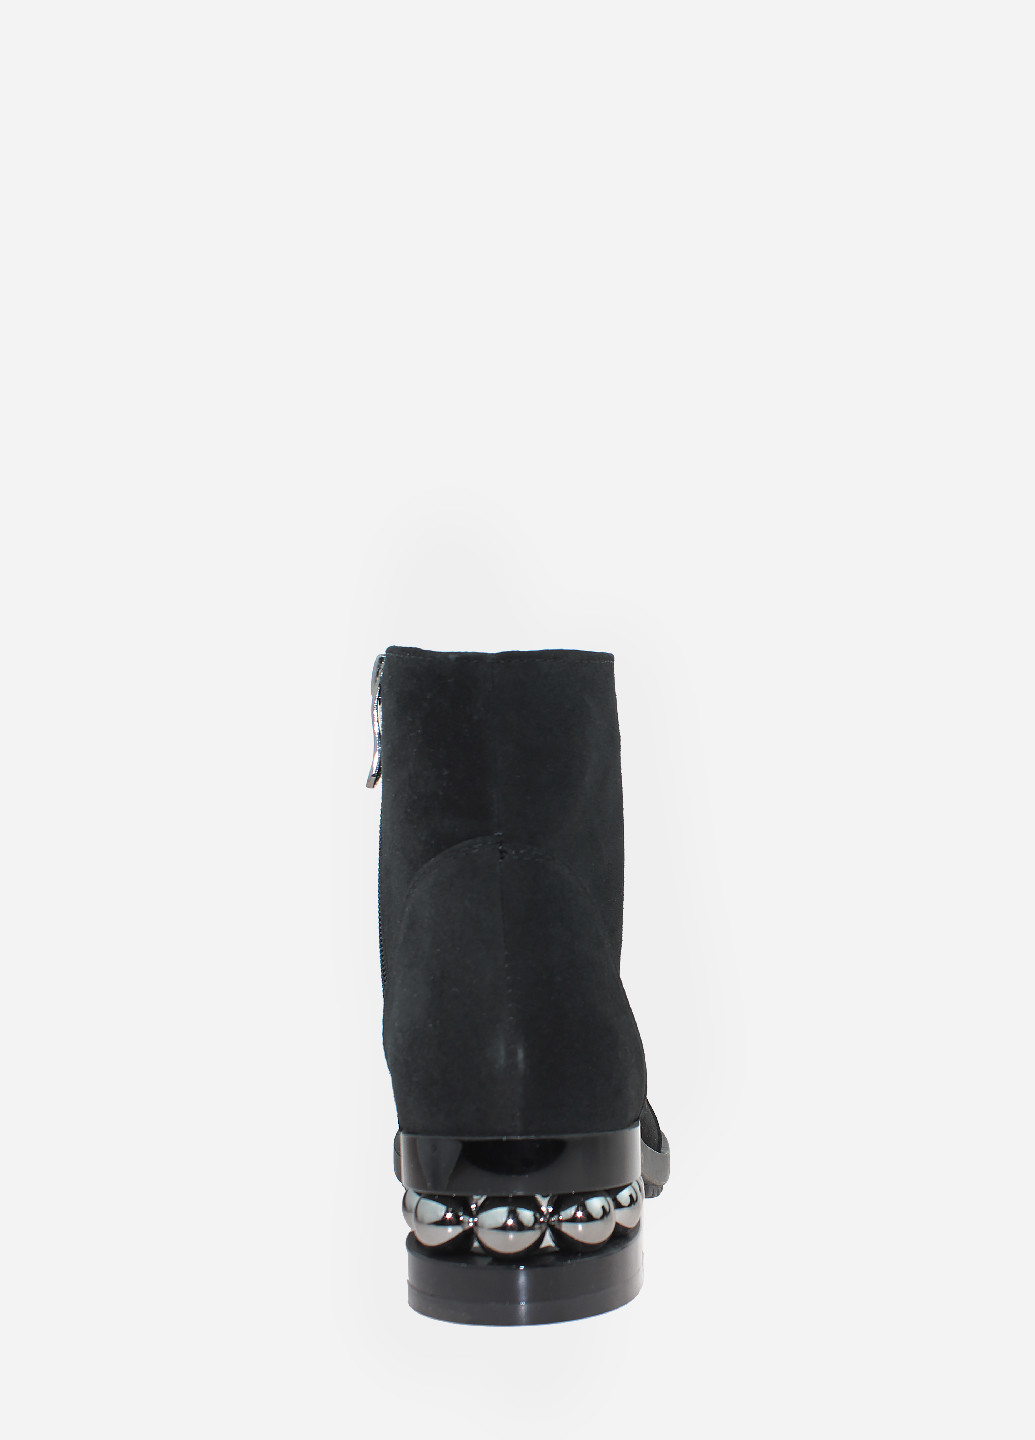 Осенние ботинки rsтиана001k-11 черный Soldi из натуральной замши